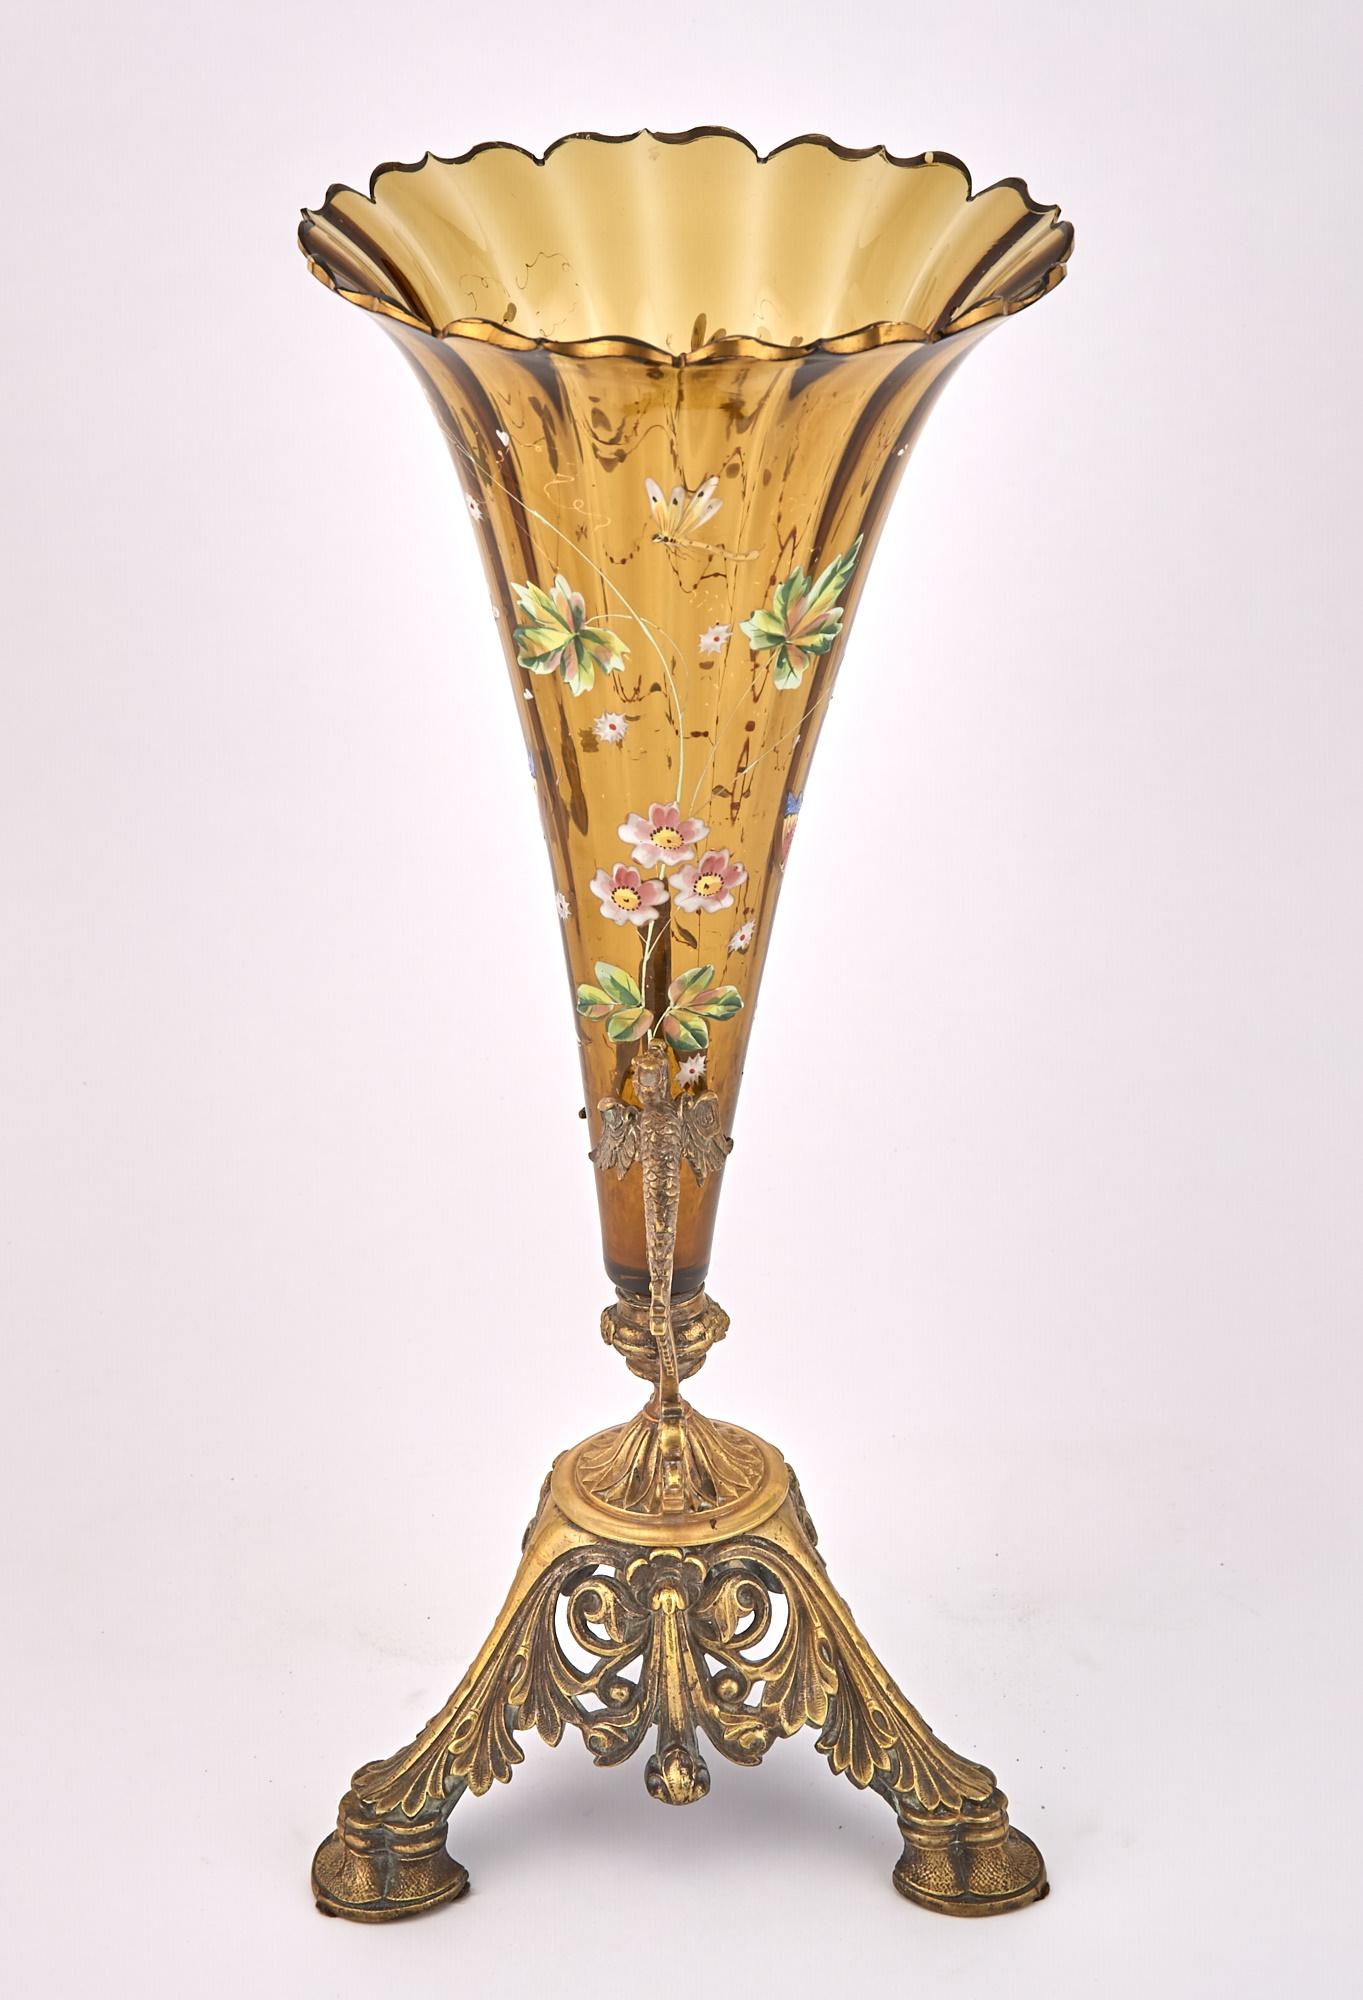 Transportez-vous dans l'opulence du milieu du 19e siècle avec notre exquis vase décoratif en verre d'art émaillé français. Cette pièce captivante allie harmonieusement l'art et l'artisanat, ce qui en fait un ajout remarquable à toute